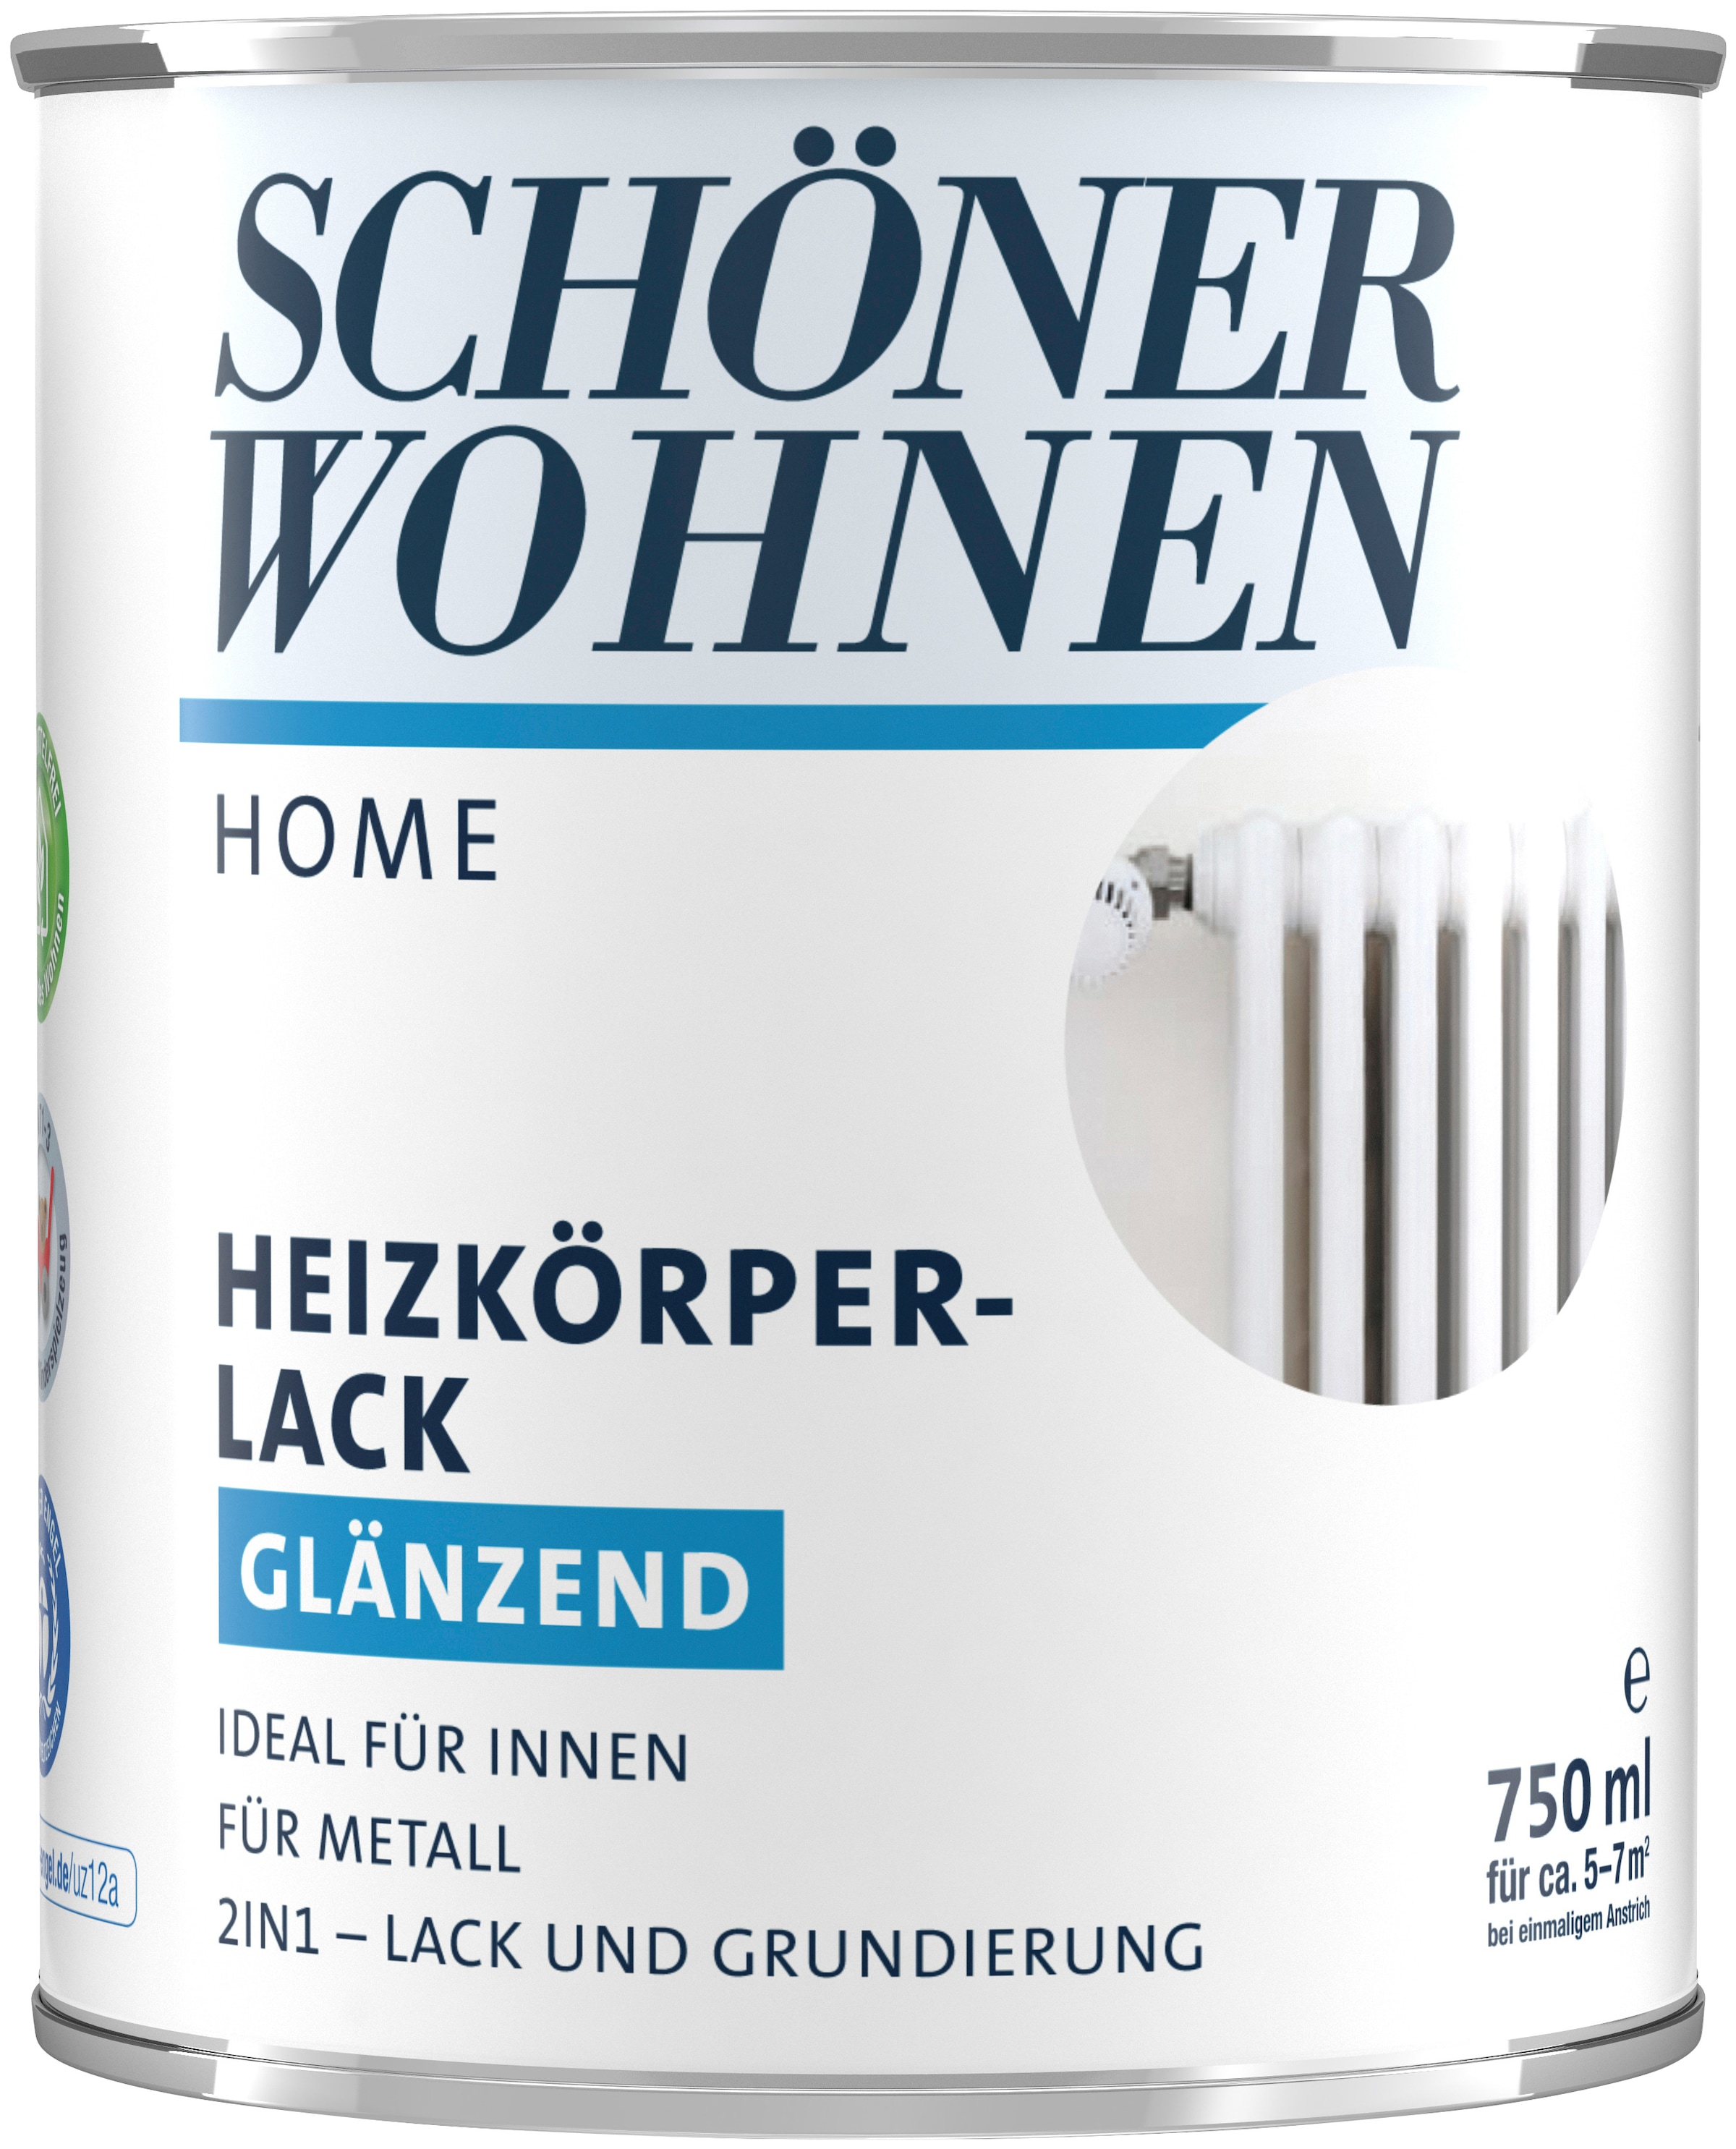 SCHÖNER WOHNEN FARBE Heizkörperlack »Home«, 750 ml, weiß, glänzend, ideal für innen, 2in1-Lack